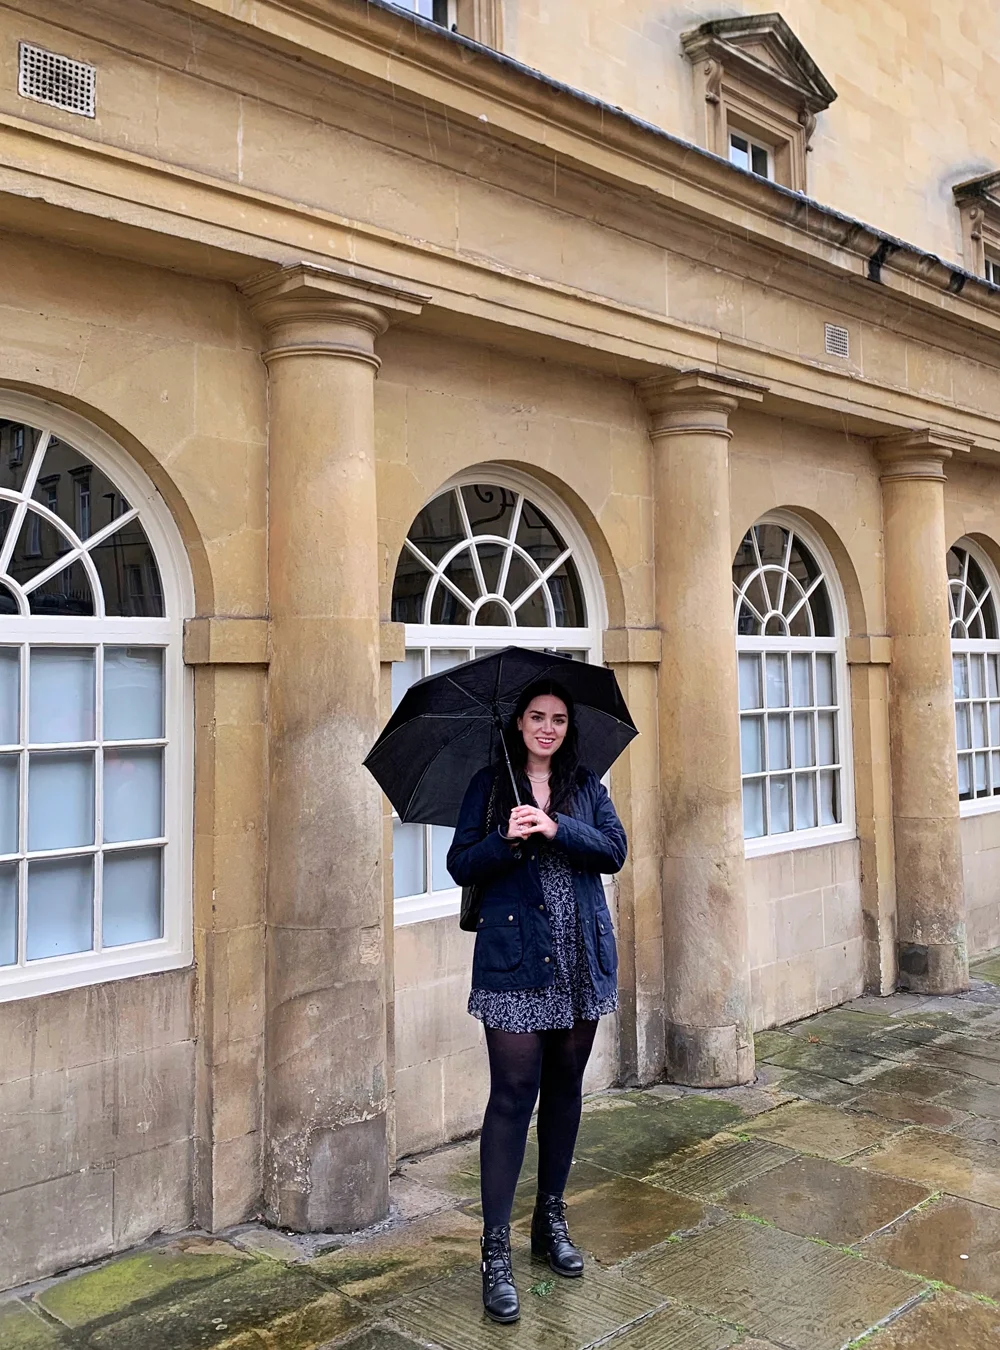 Rainy weekend in Bath - Emma Louise Layla Berry, UK travel & lifestyle blog